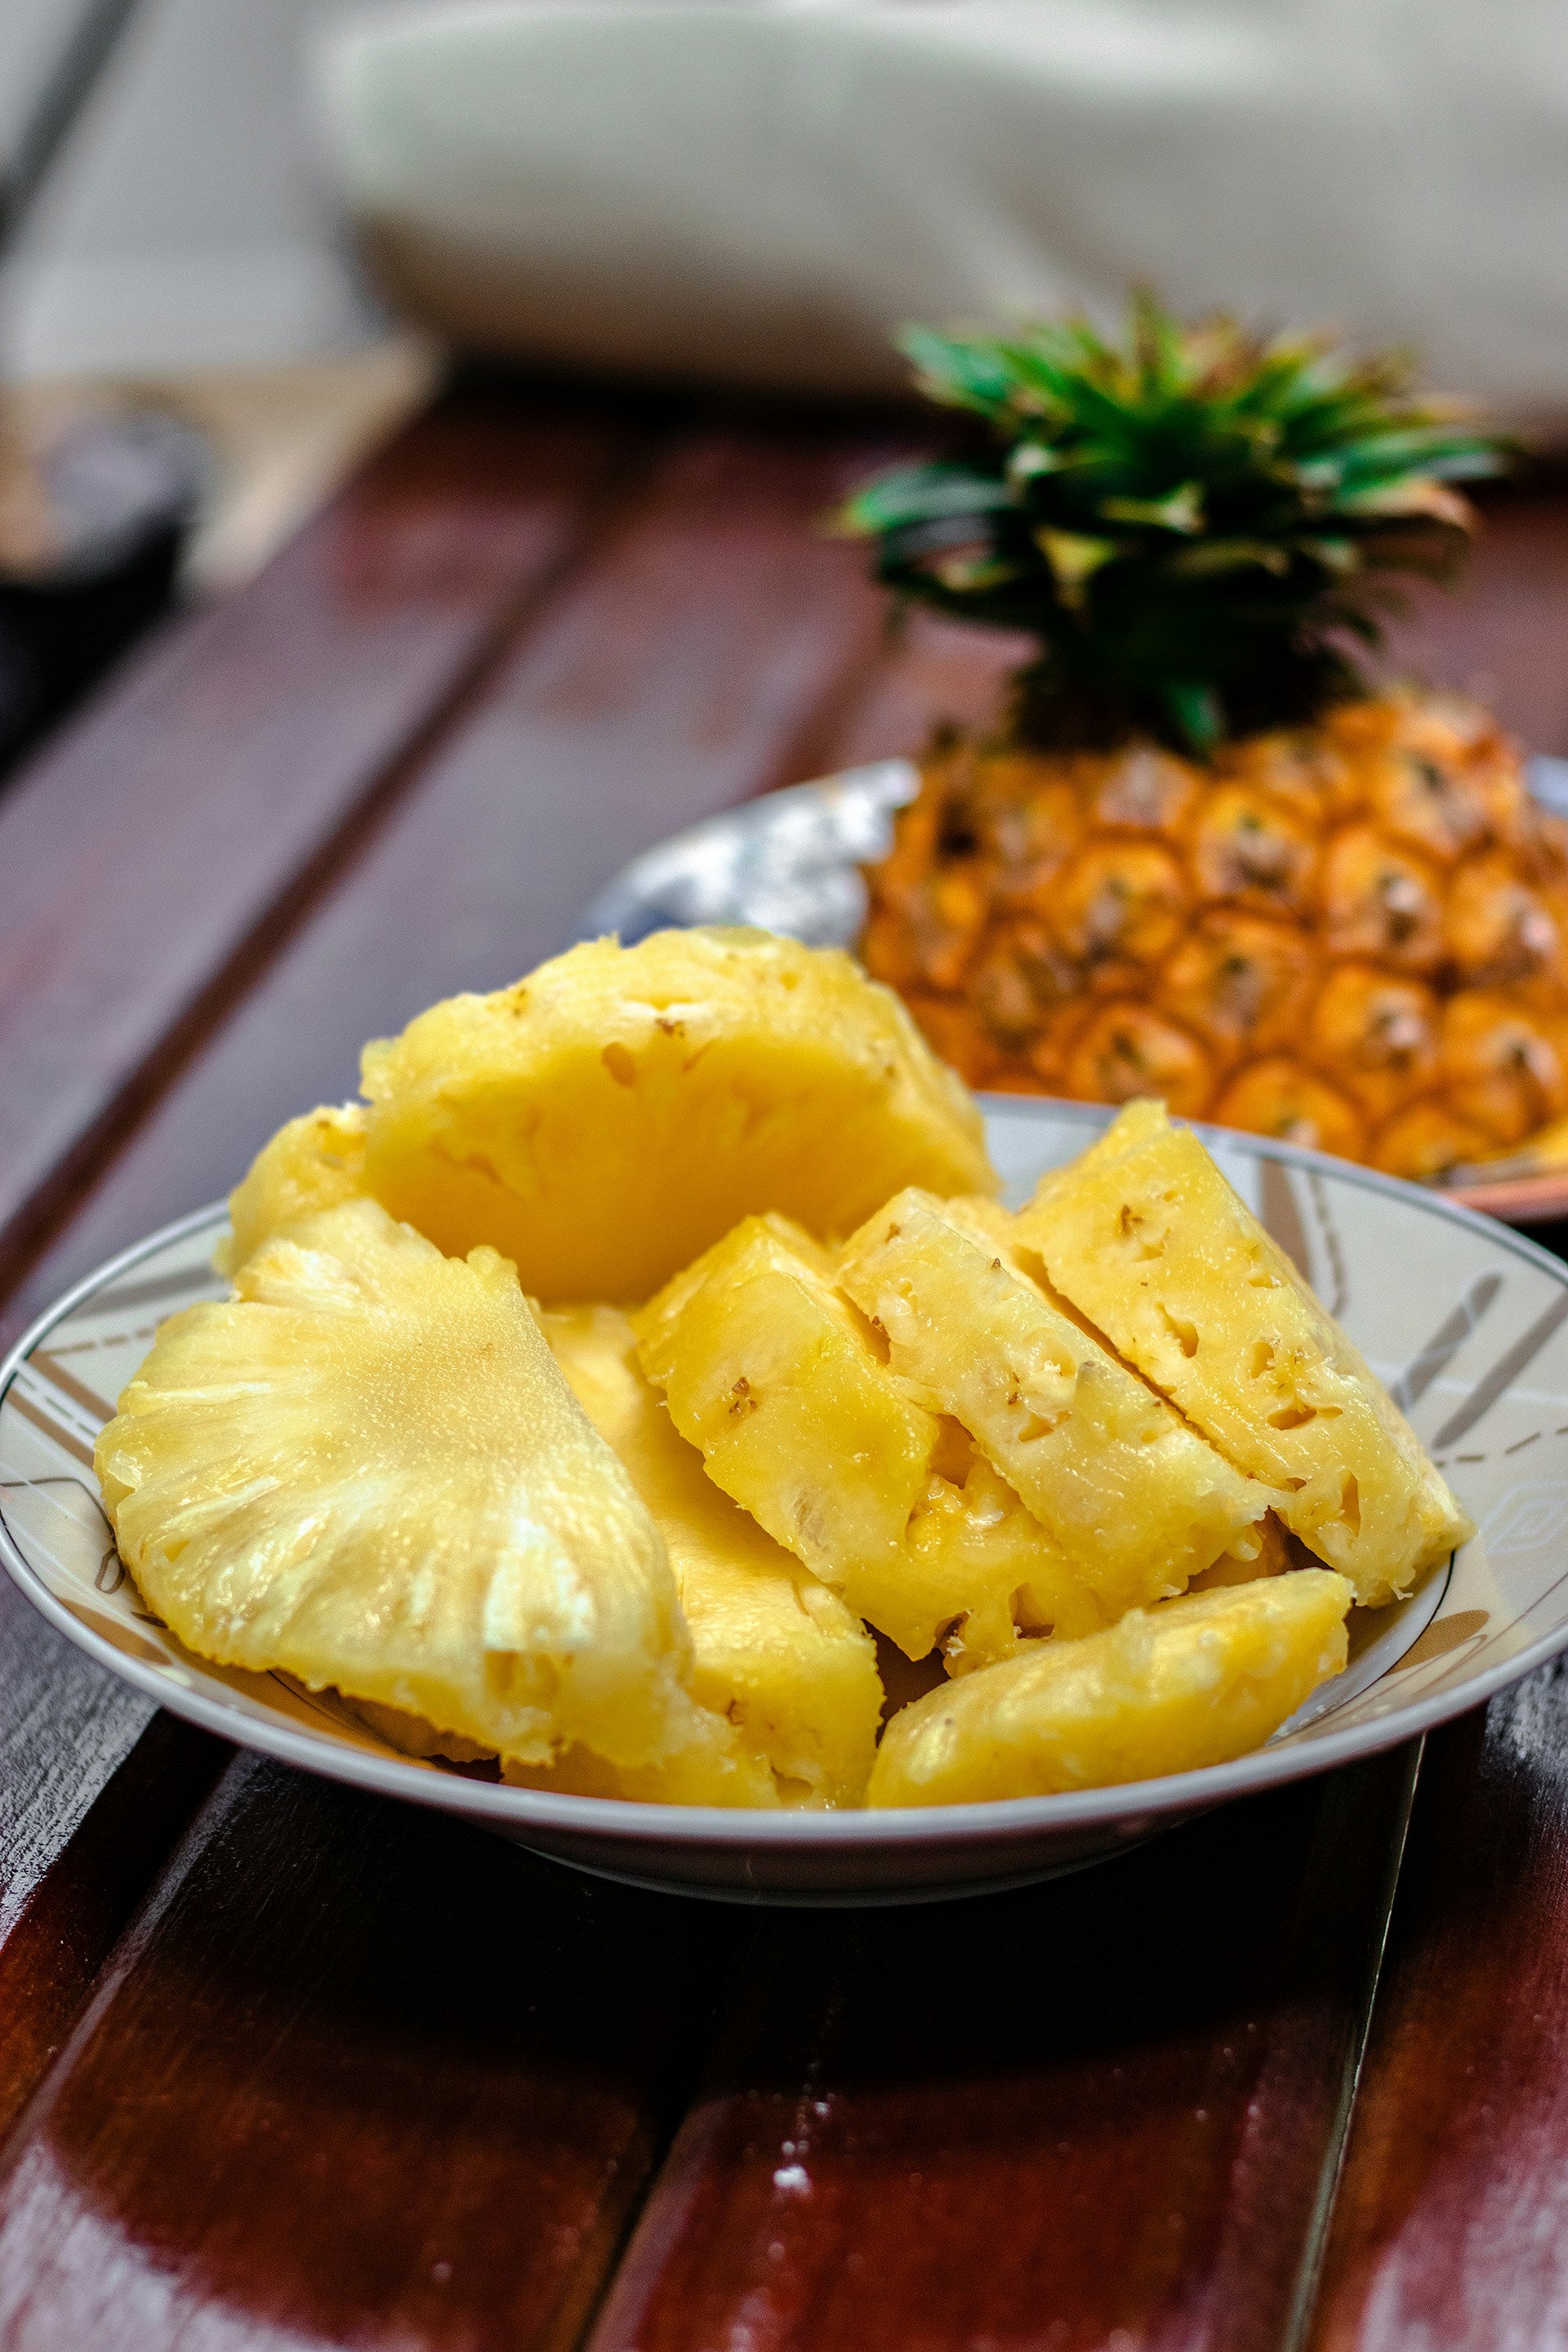 How Long Do Pineapples Last In The Fridge? | Fridge.com